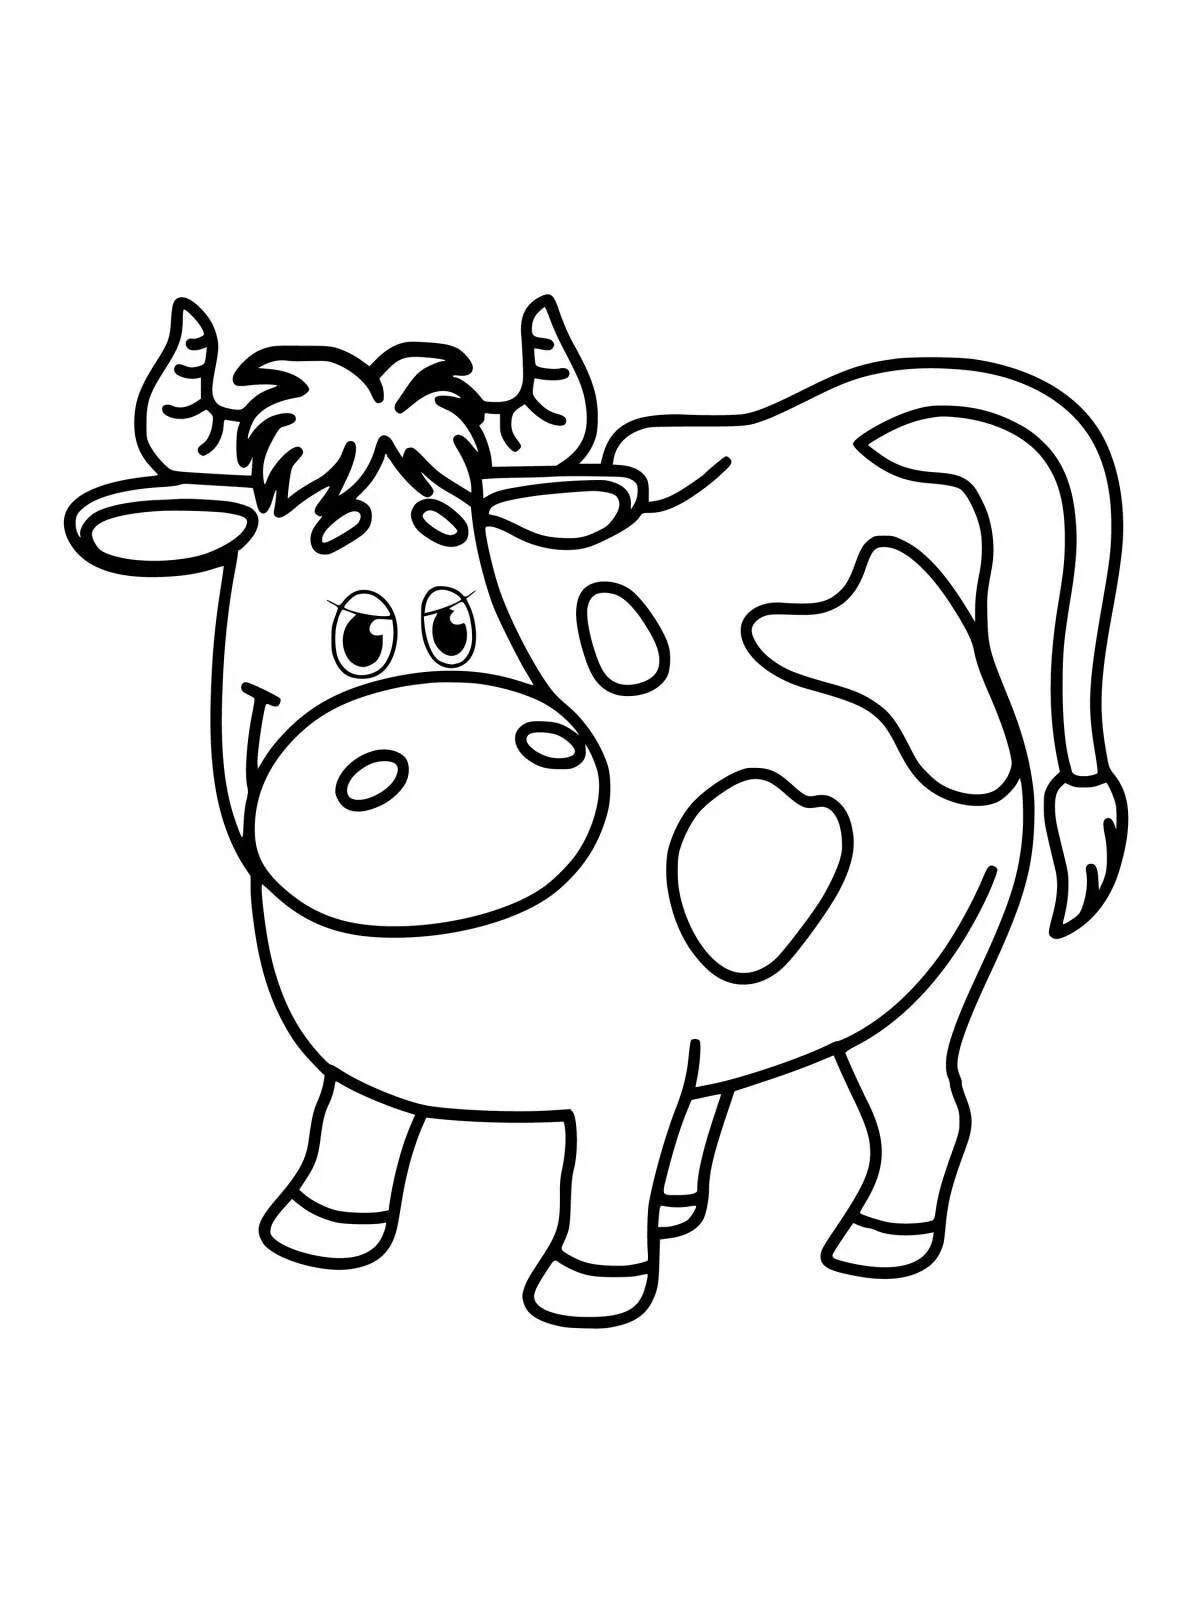 Раскраски для детей 3 года коровы. Раскраска корова. Корова раскраска для детей. Корова раскраска для малышей. Коровка раскраска для детей.